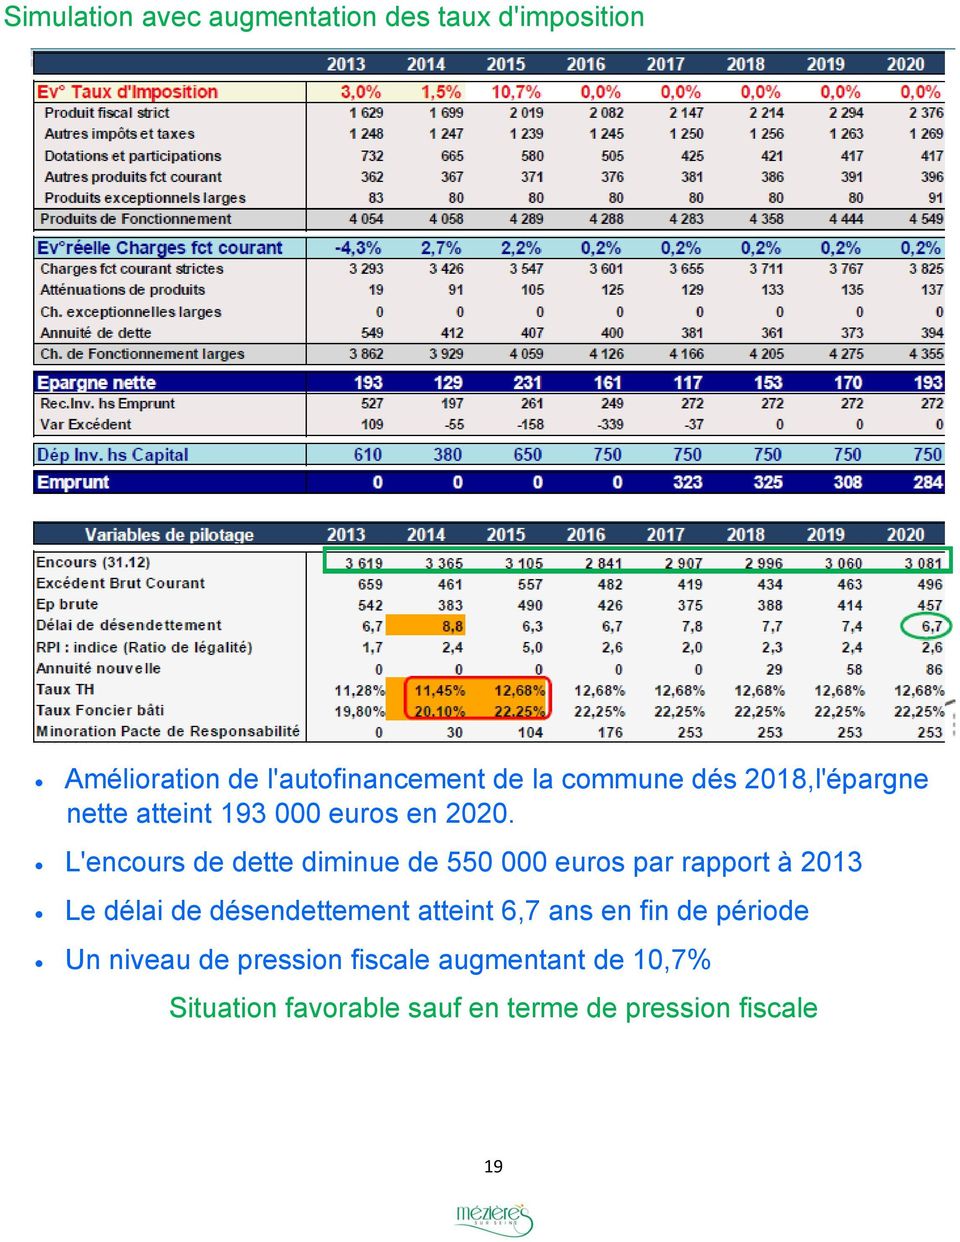 L'encours de dette diminue de 550 000 euros par rapport à 2013 Le délai de désendettement